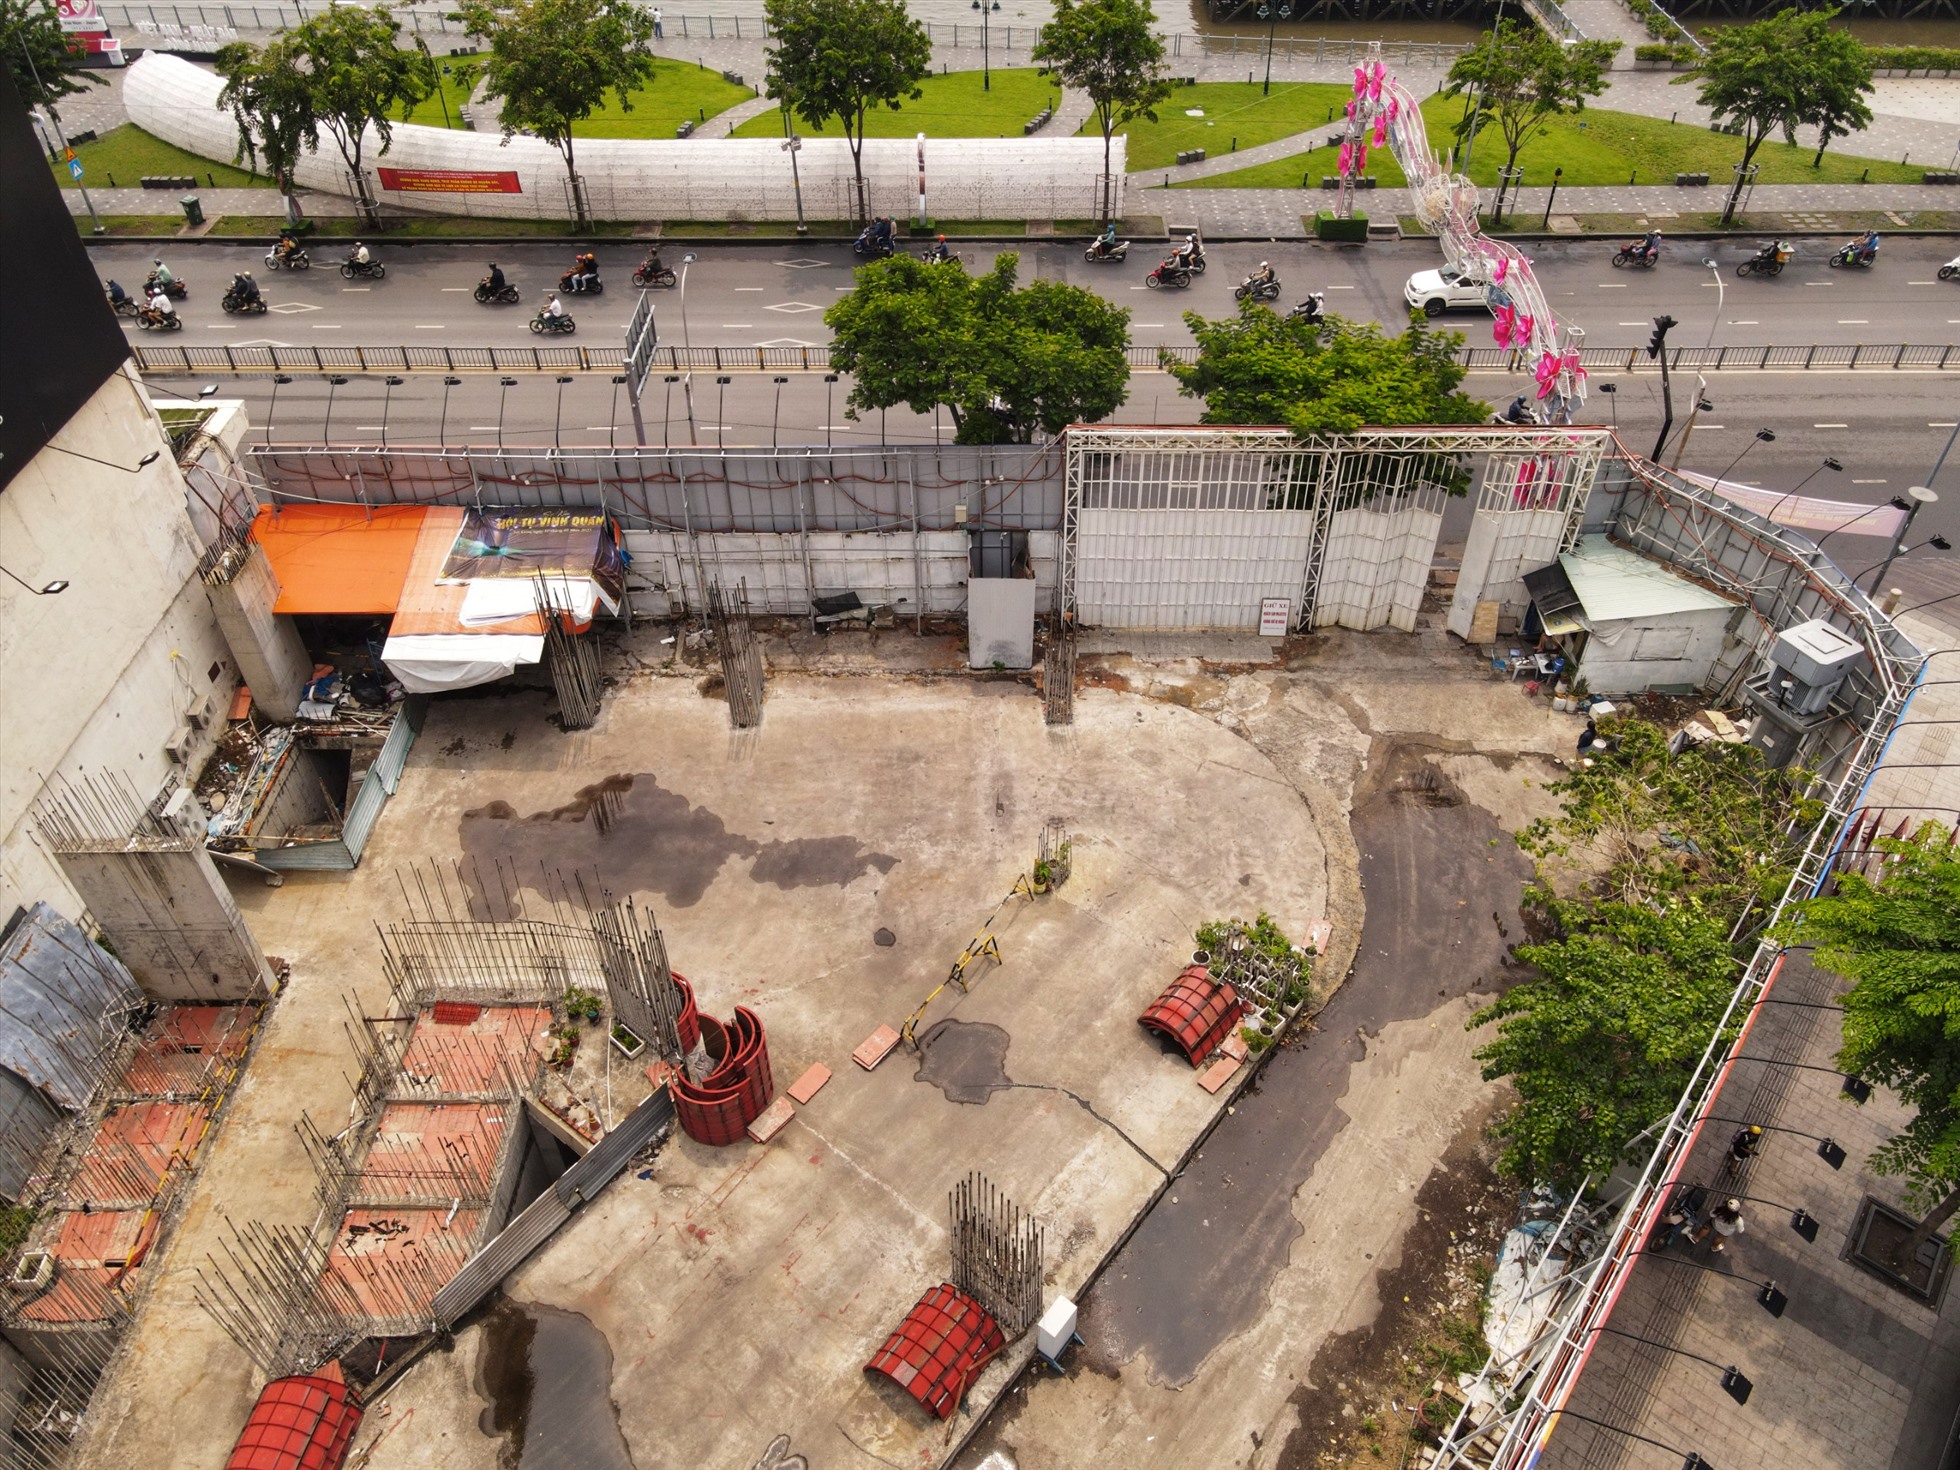 Dự án được khởi công năm 2011, nằm trong chuỗi công trình đầu tư trọng điểm của Saigontourist, tổng vốn đầu tư 1.900 tỷ đồng. Đến nay, nơi đây vẫn chỉ là bãi đất trống, được tận dụng làm bãi giữ xe của riêng khách sạn Majestic.